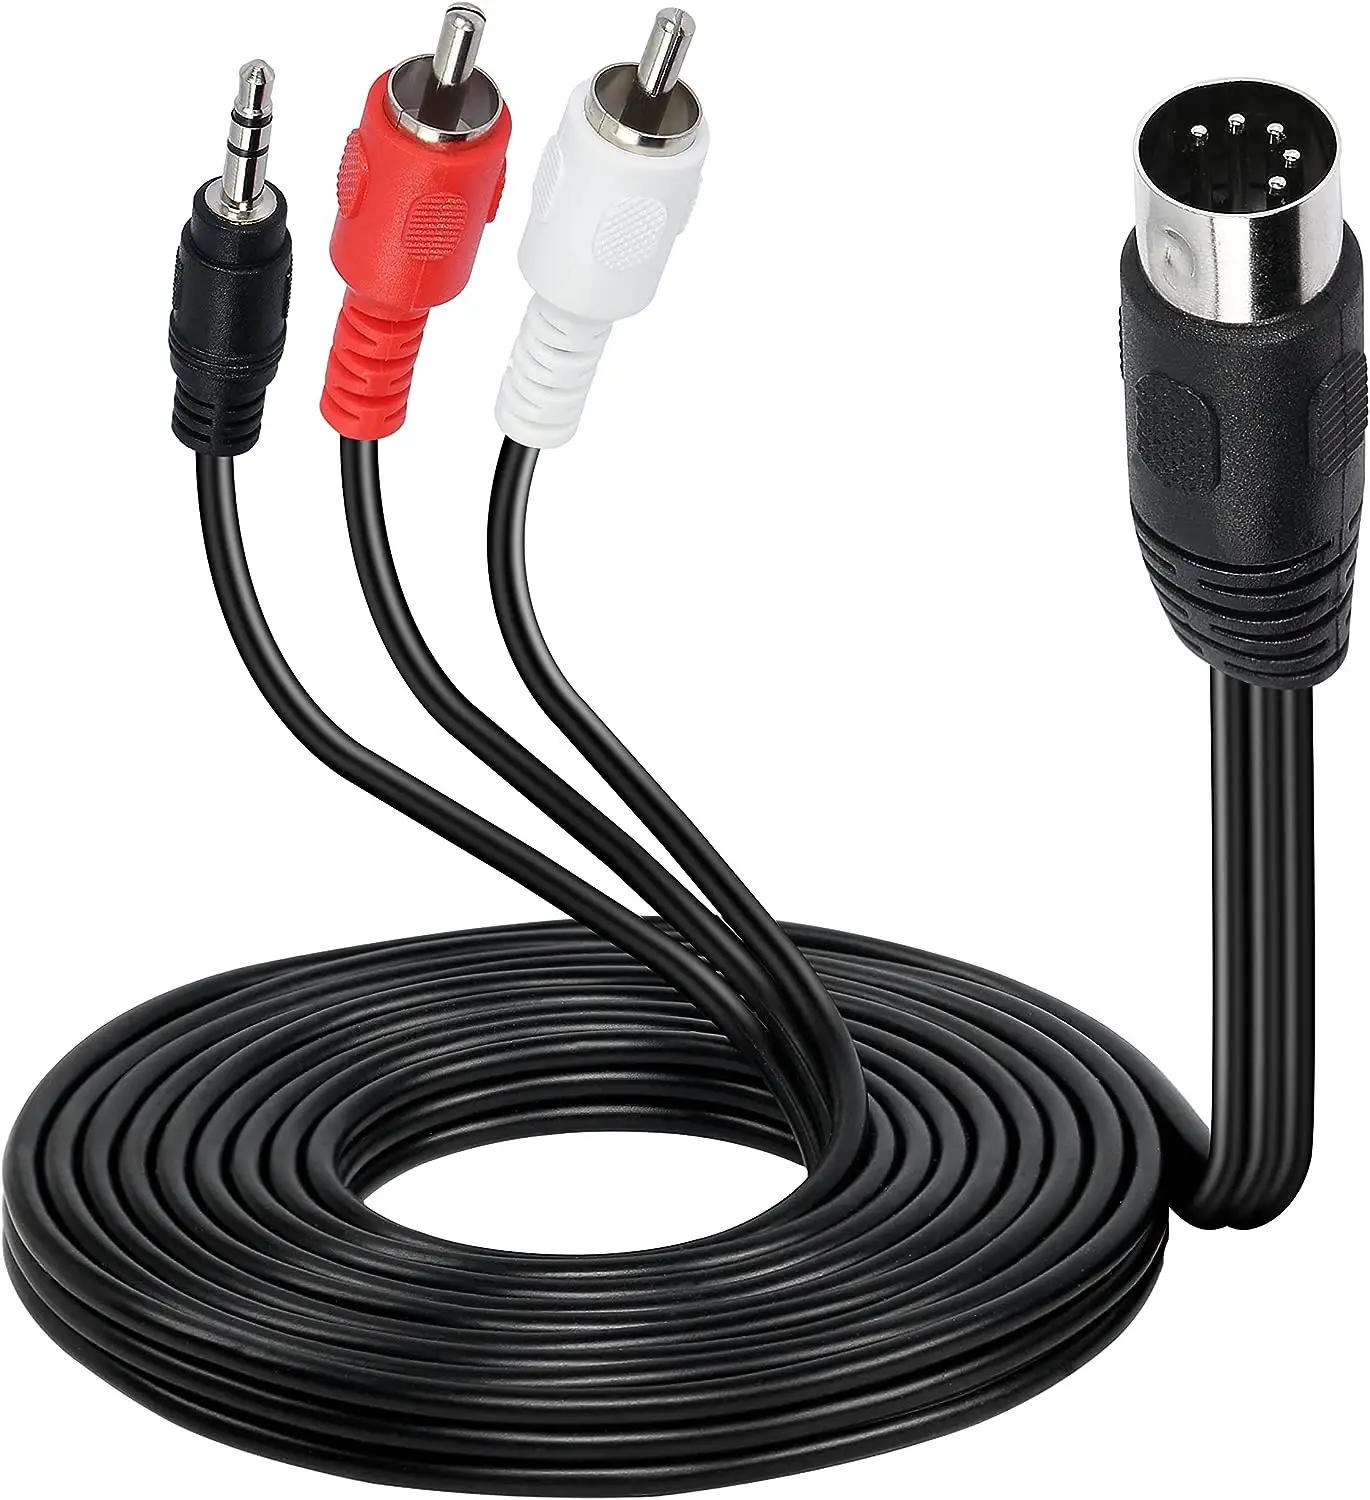 Din MIDI 5-poliger Stecker an 2 Cinch/3,5-mm-TRS-Stereo-AUX-Adapter kabel für den Signal ausgang von Radio-Audio-Geräten